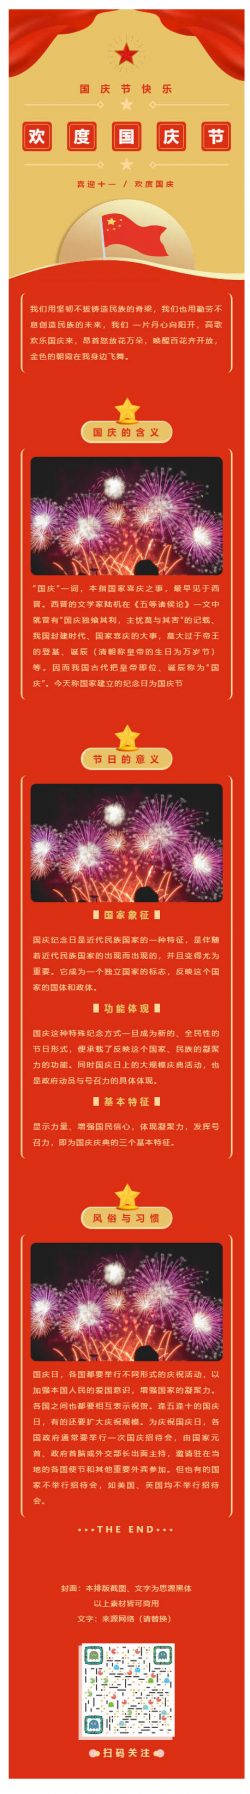 纪念日国庆节70周年红色党政风格模板微信推文素材推送文章